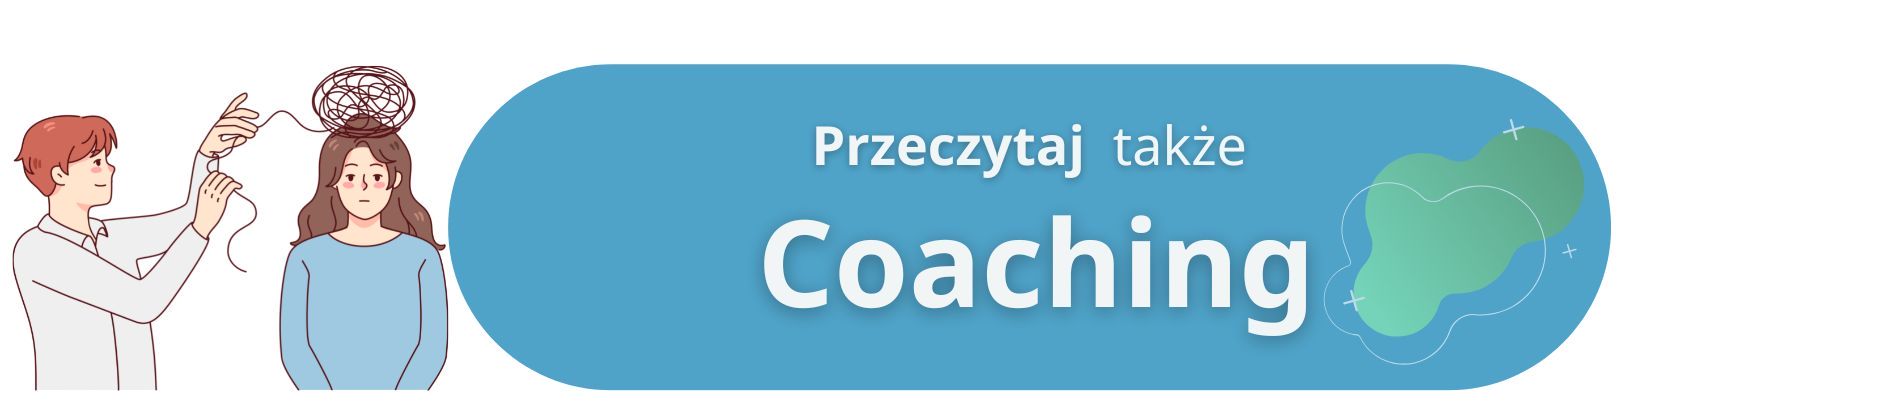 coaching online